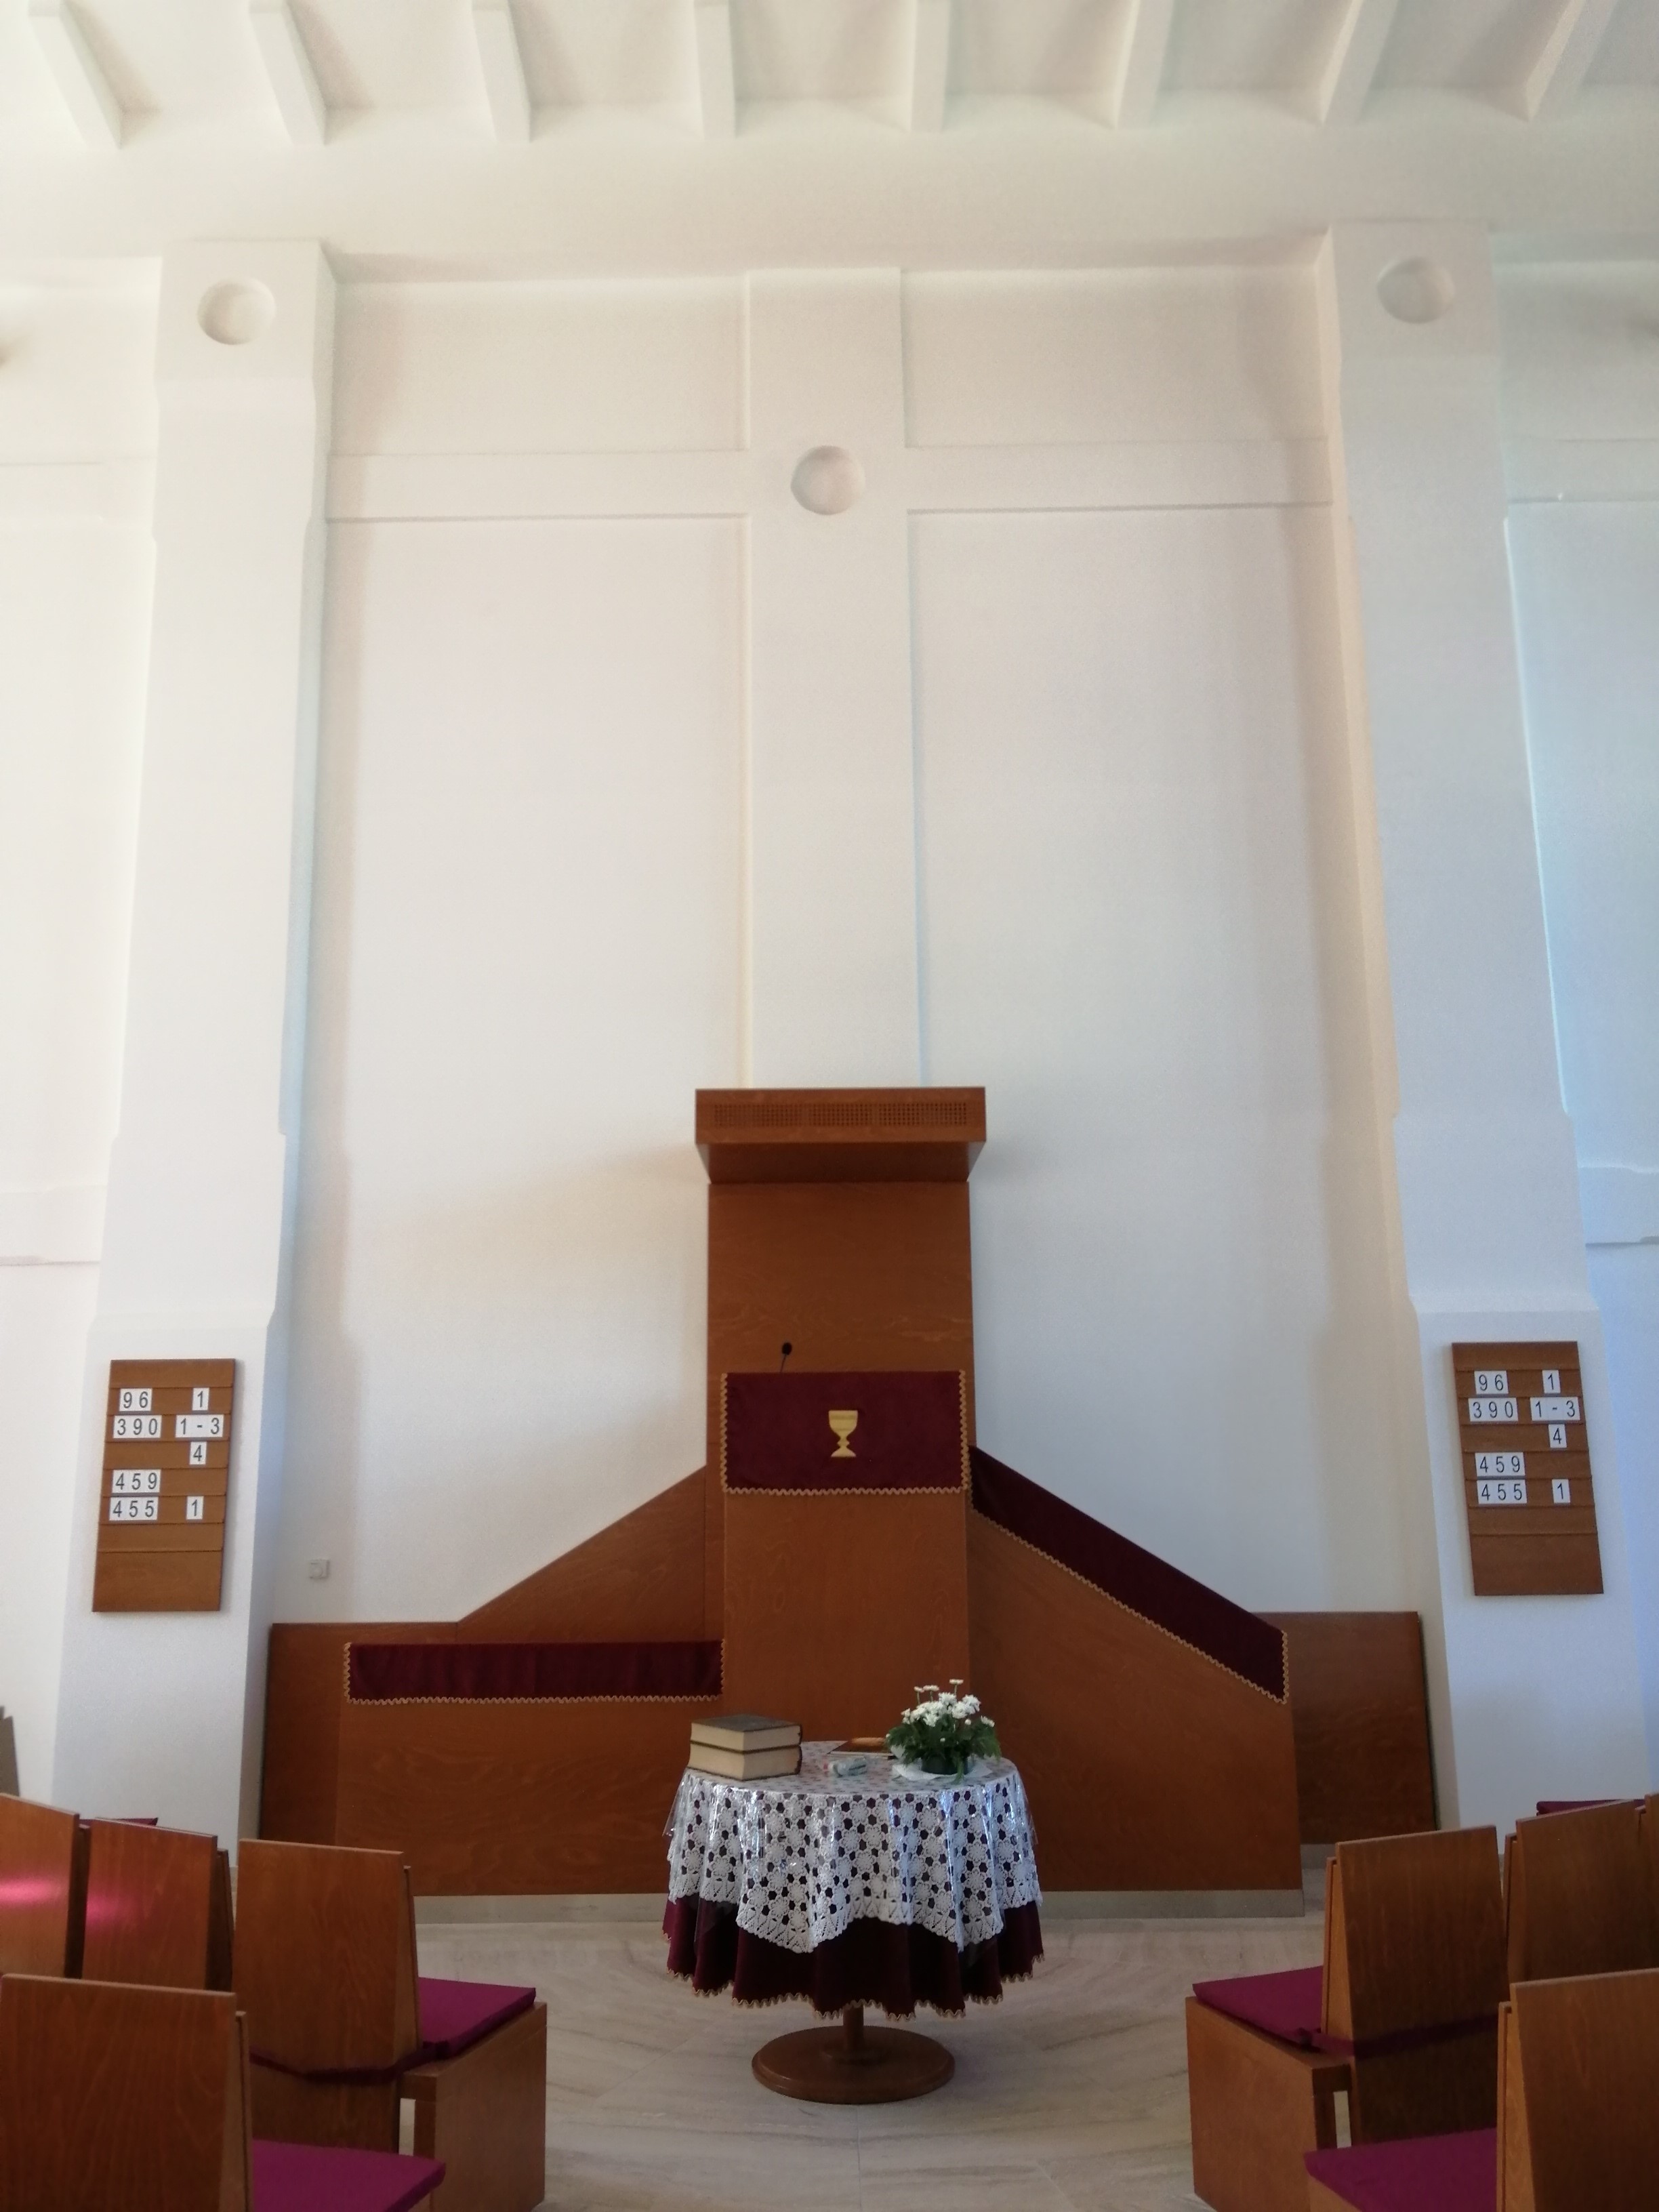  Soroksár-Újtelepi református templom